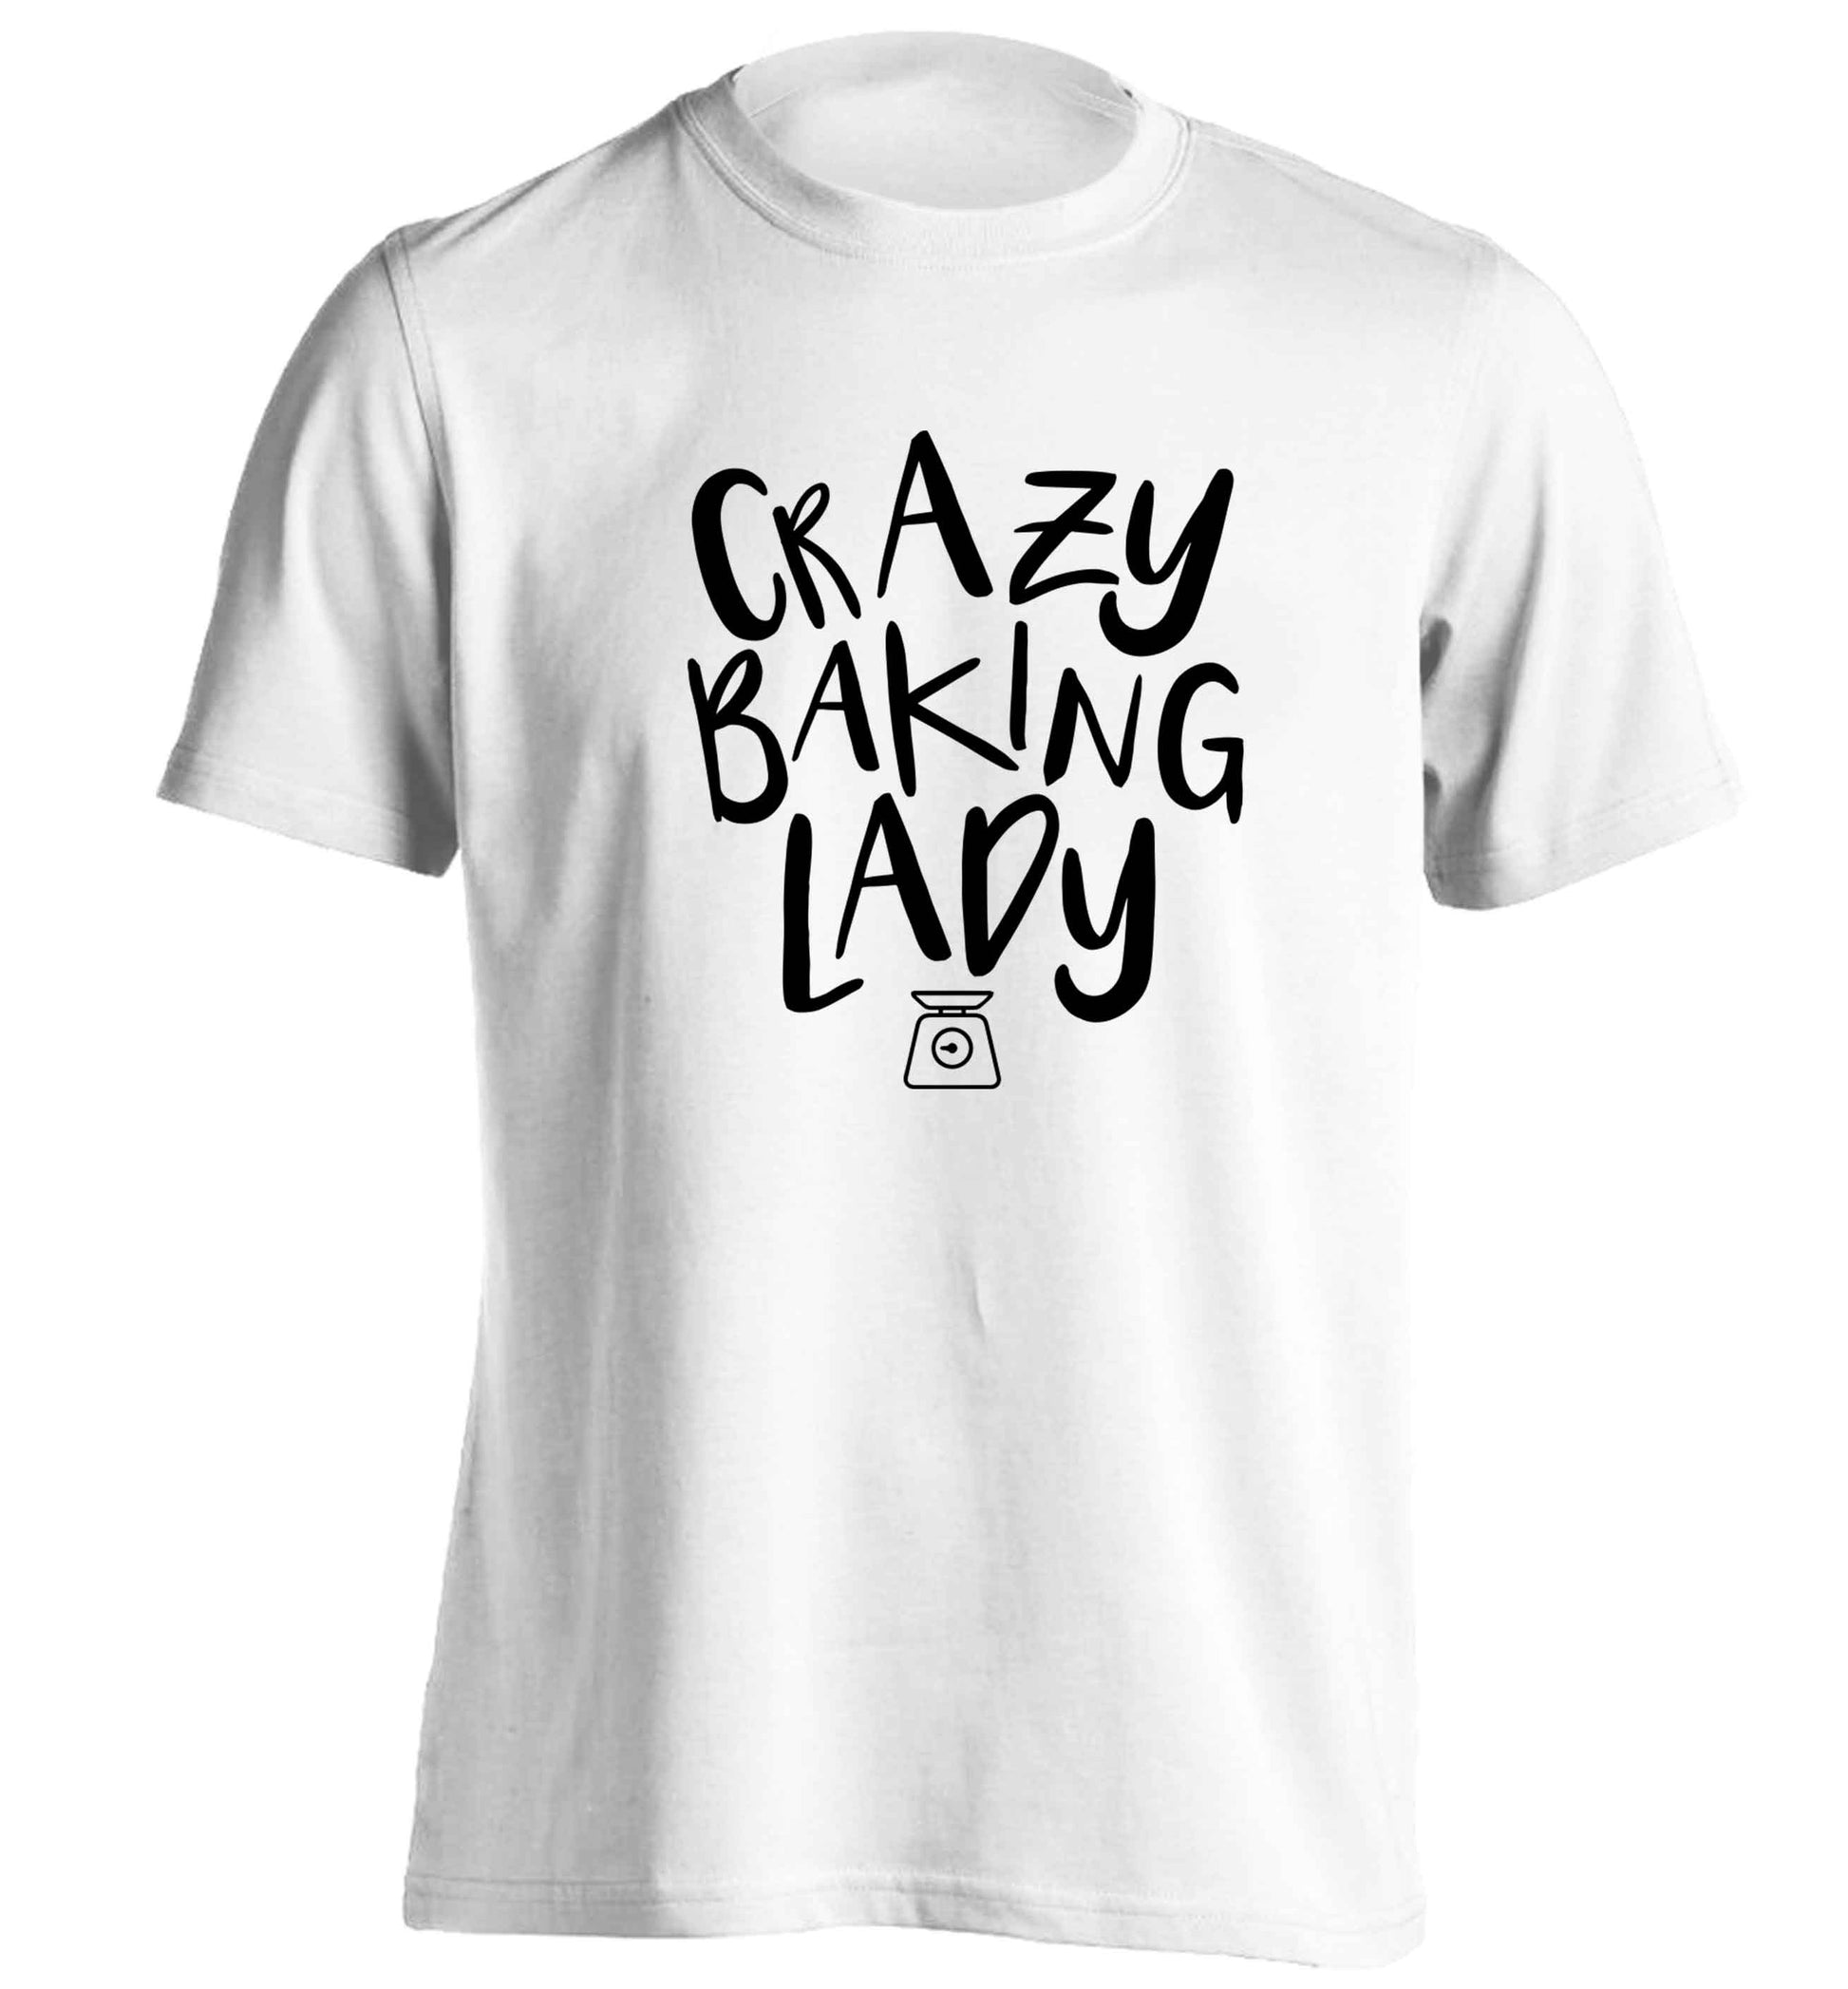 Crazy baking lady adults unisex white Tshirt 2XL